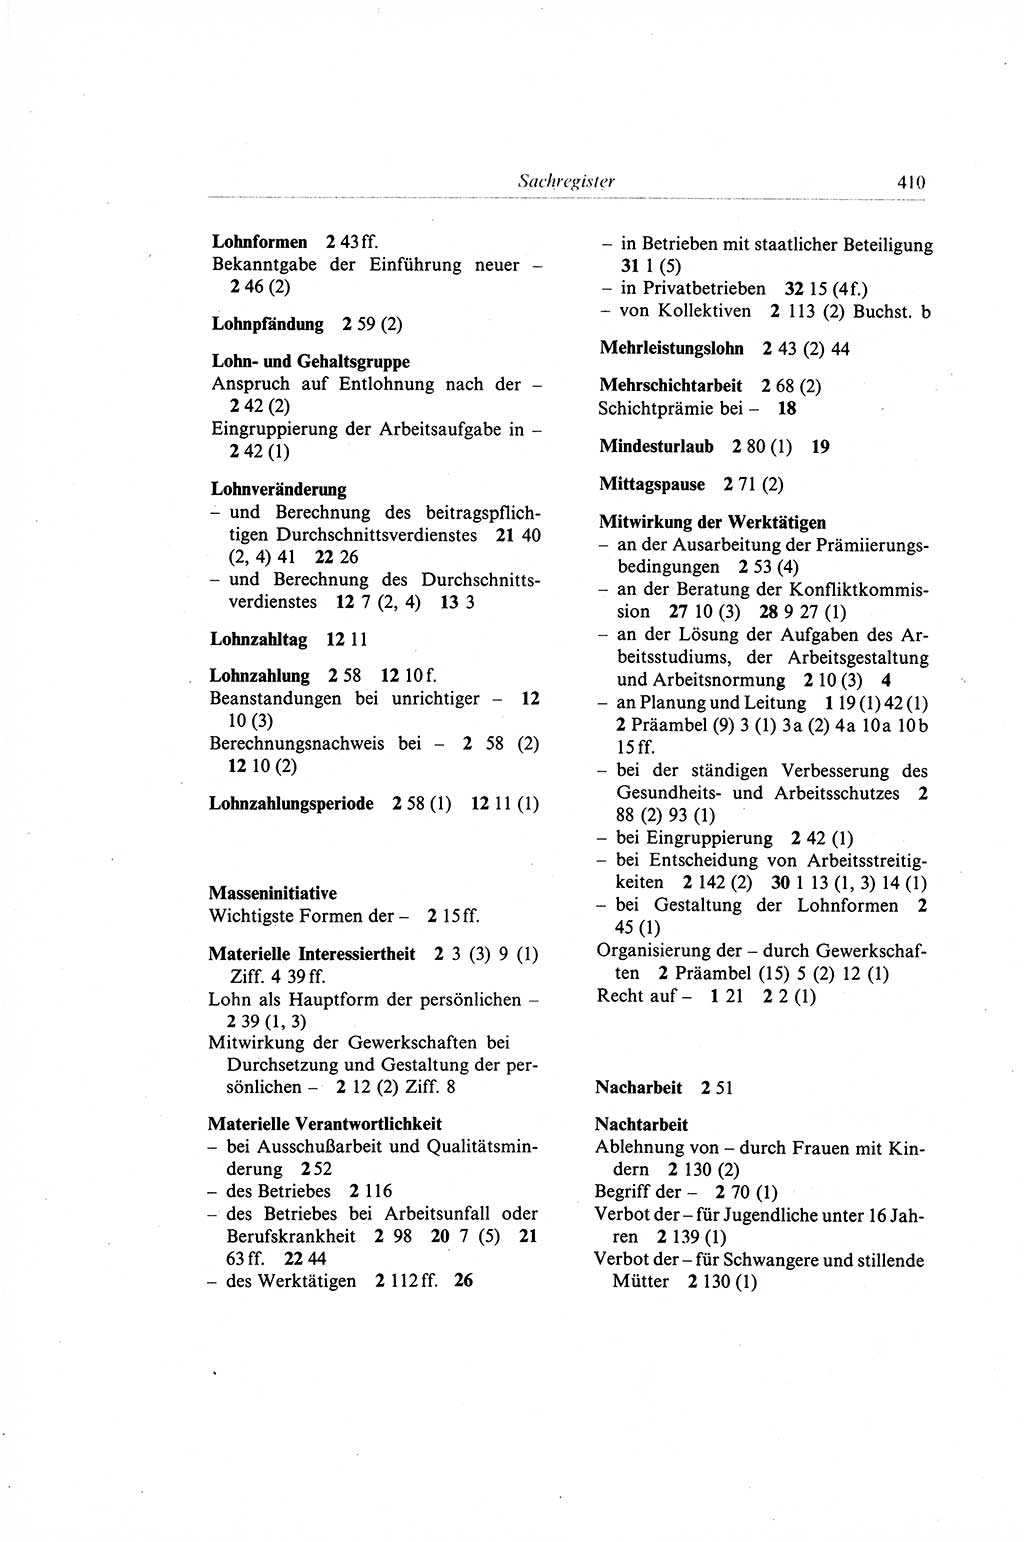 Gesetzbuch der Arbeit (GBA) und andere ausgewählte rechtliche Bestimmungen [Deutsche Demokratische Republik (DDR)] 1968, Seite 410 (GBA DDR 1968, S. 410)